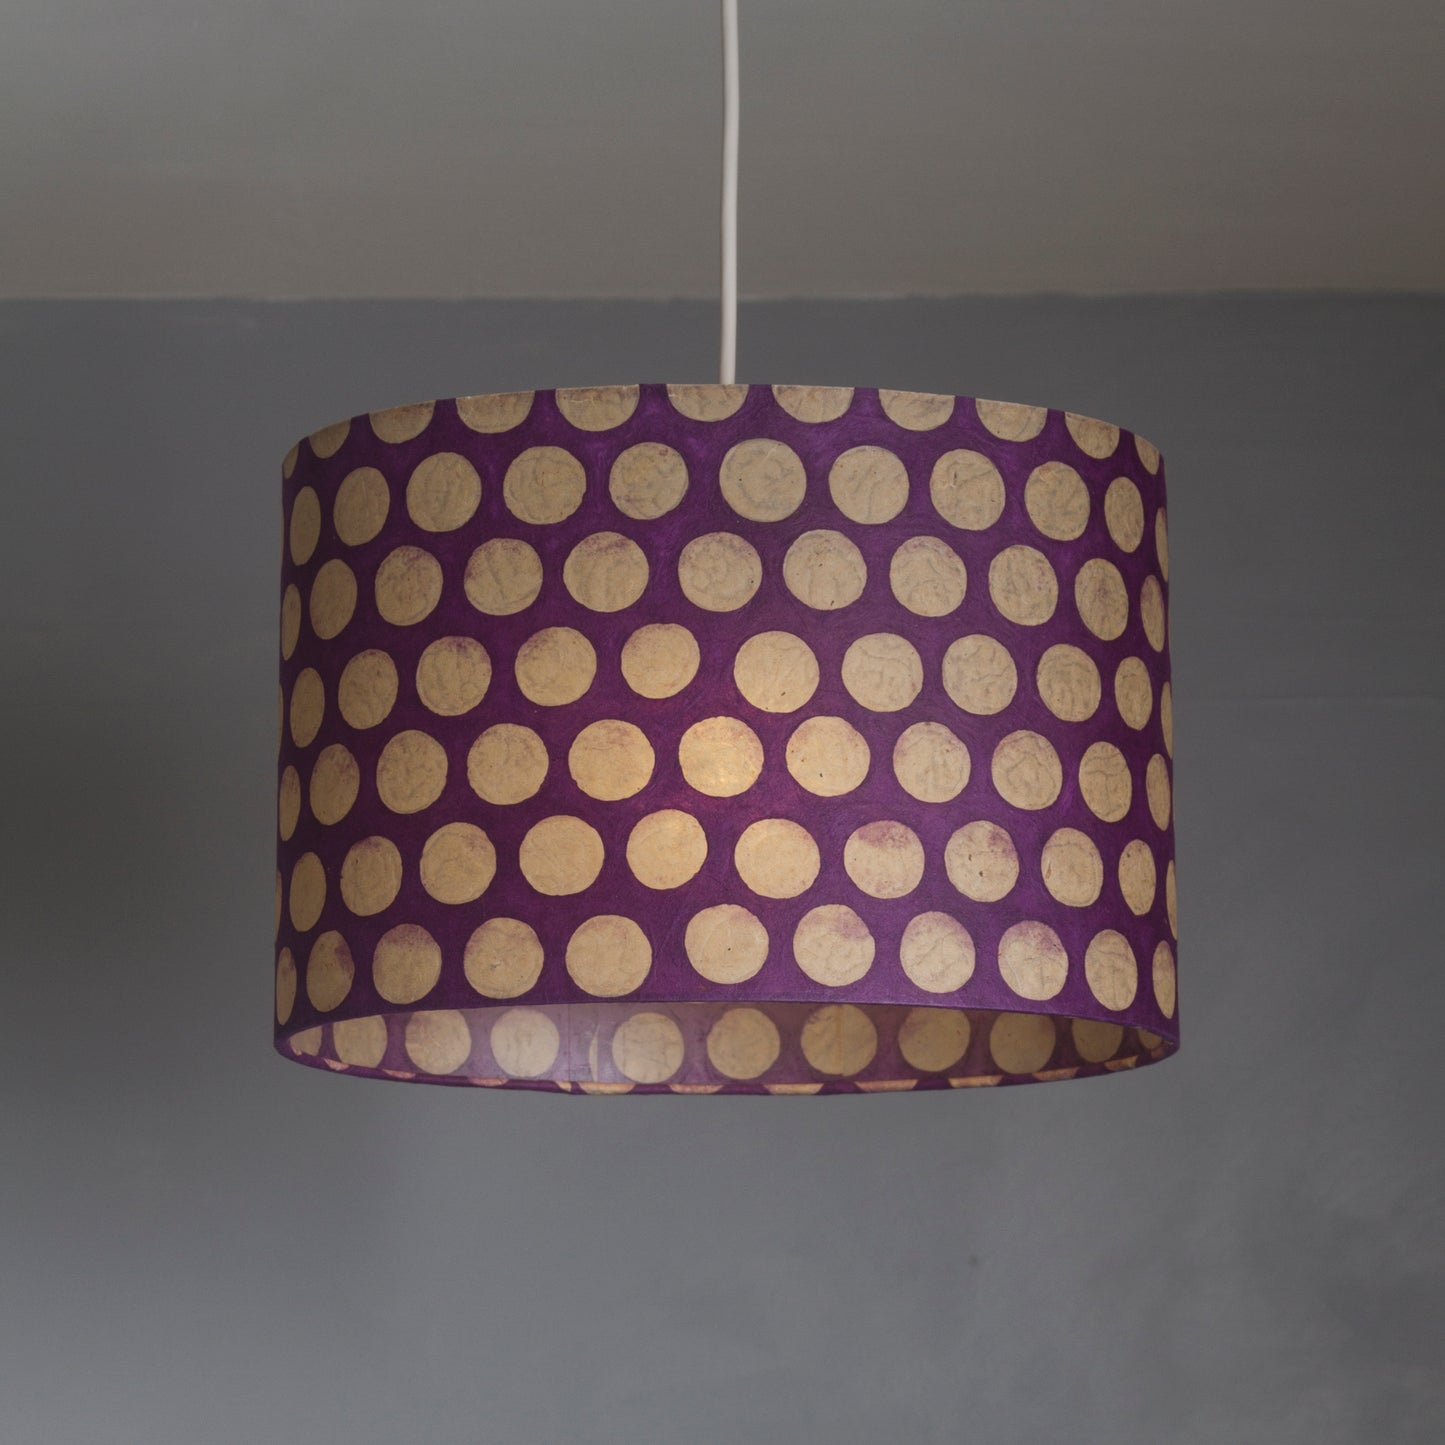 Oval Lamp Shade - P79 - Batik Dots Purple, 30cm(w) x 20cm(h) x 22cm(d)